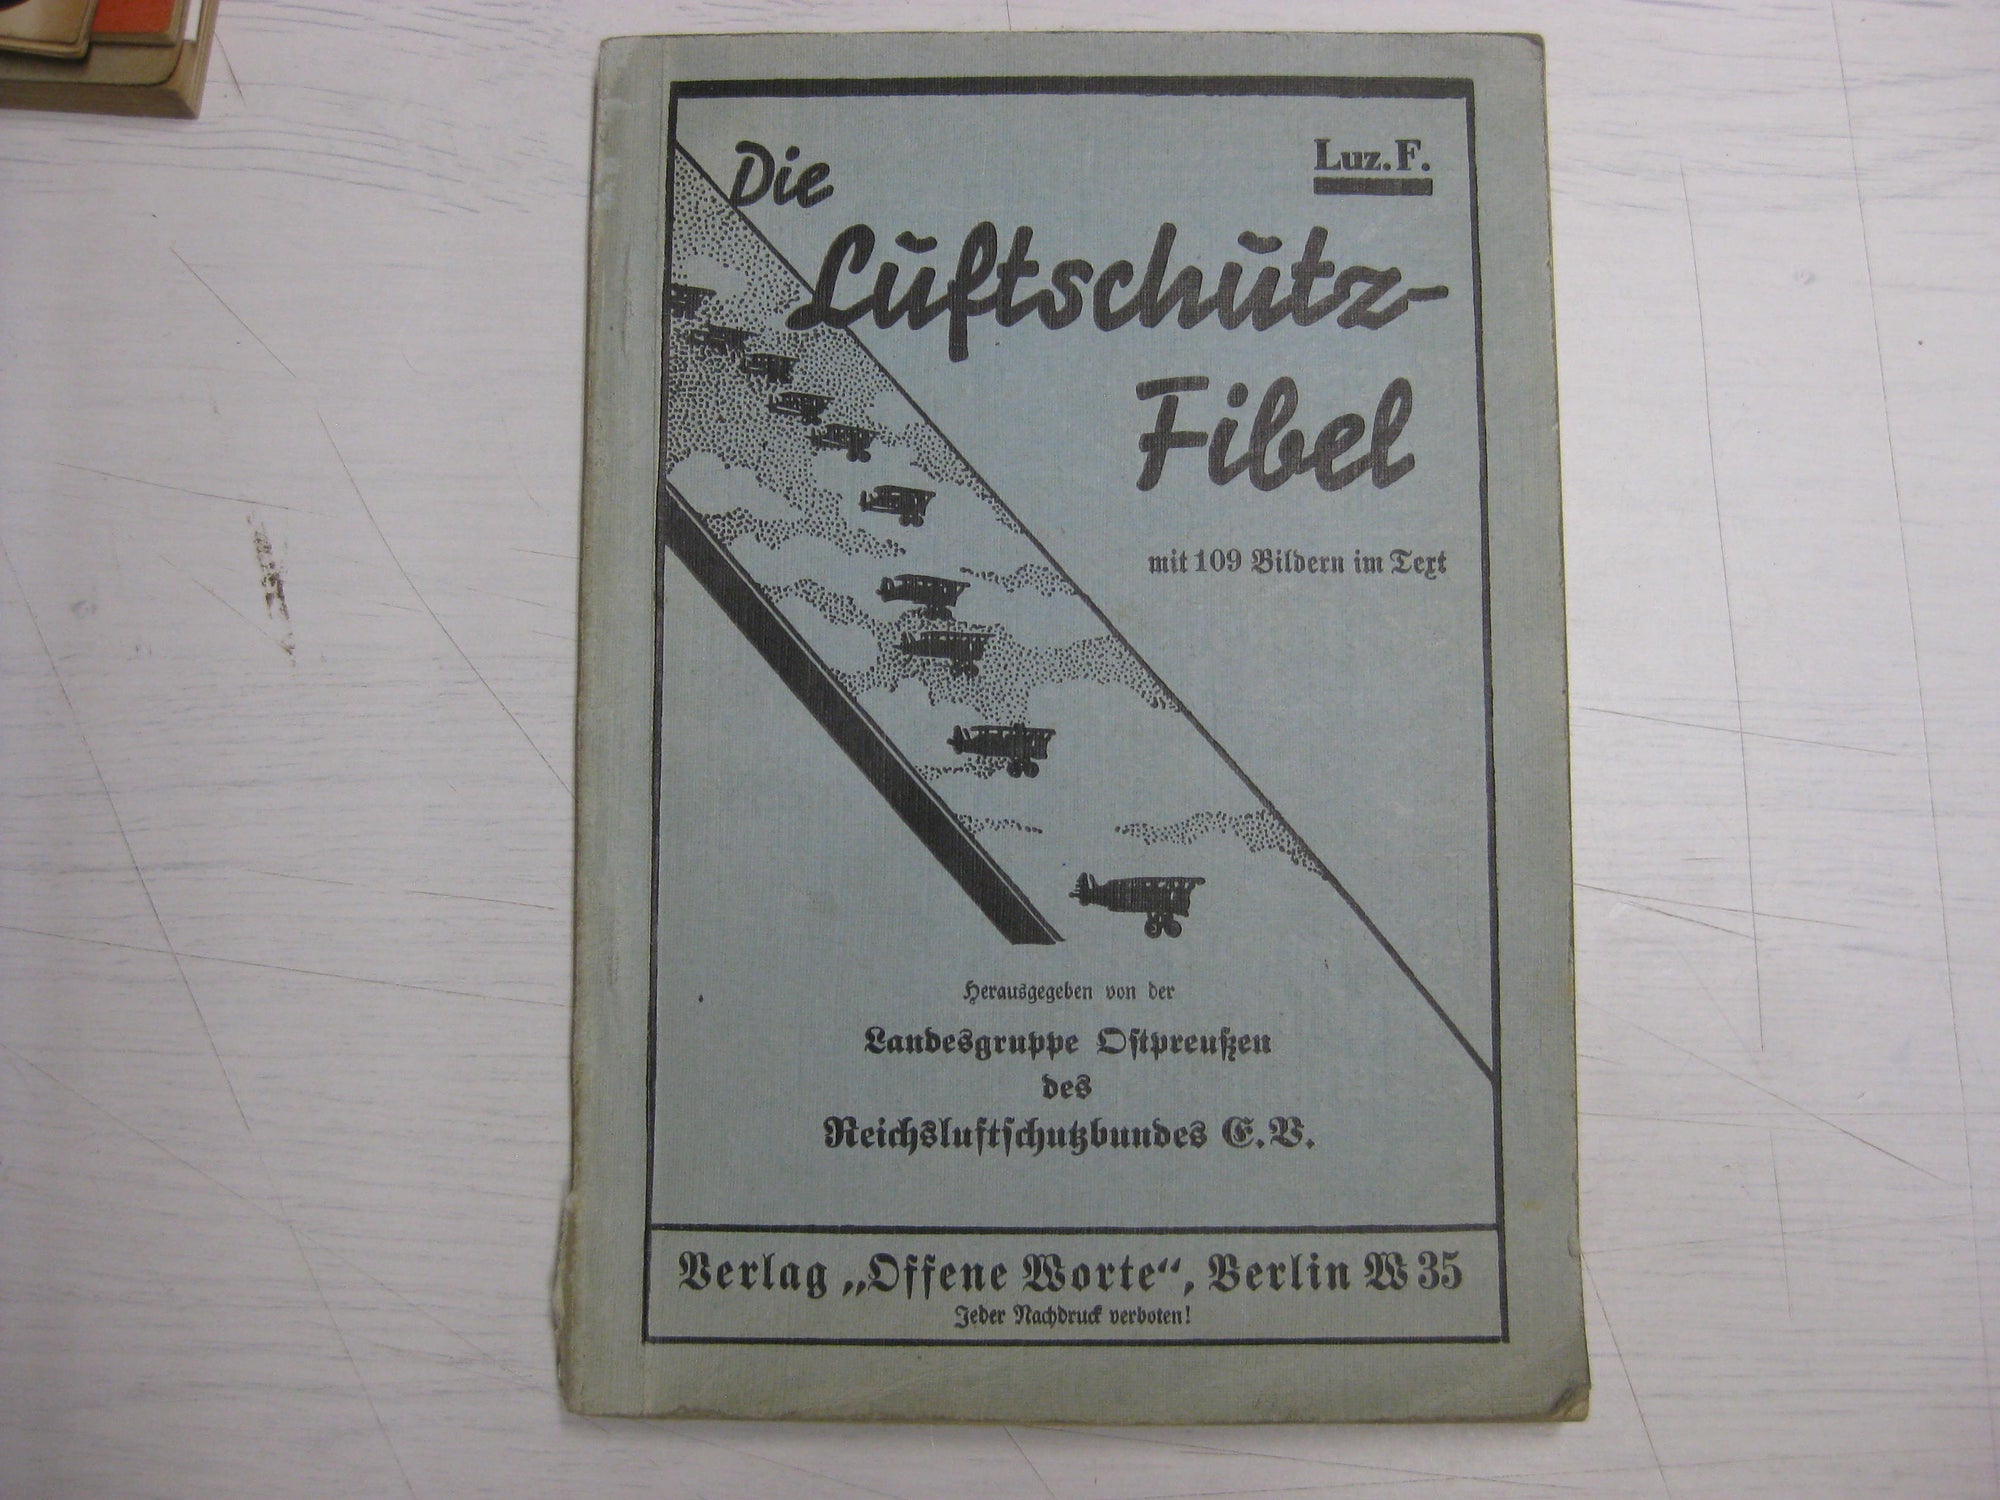 Originalausgabe Heft / Buch Die Luftschutz-Fibel 1933